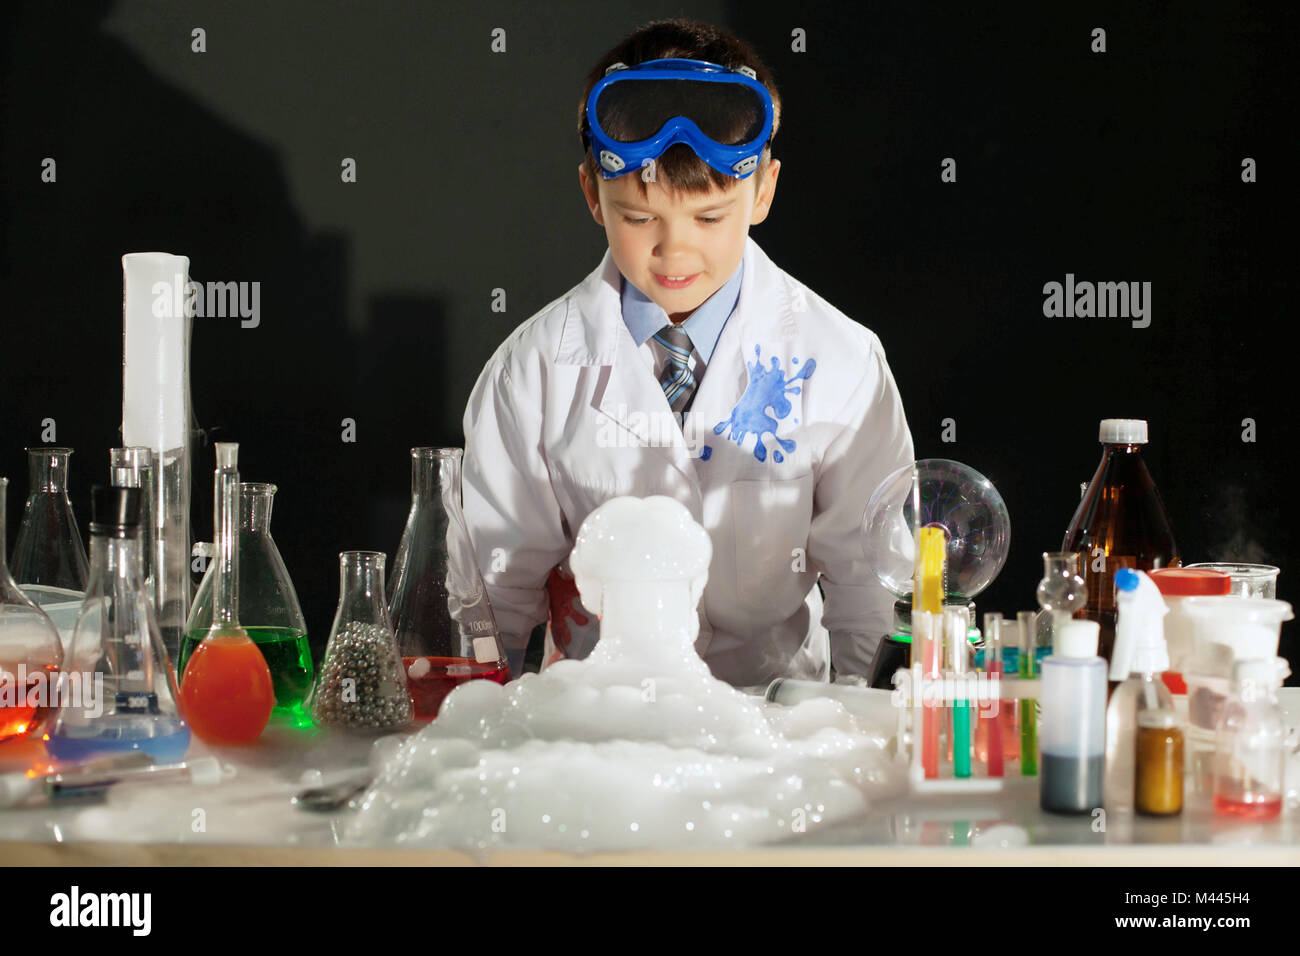 С какой целью ставят опыты. Мальчик ставит опыты. Физик Мэджик. Дети ученые атмосферные. Химики в аса.